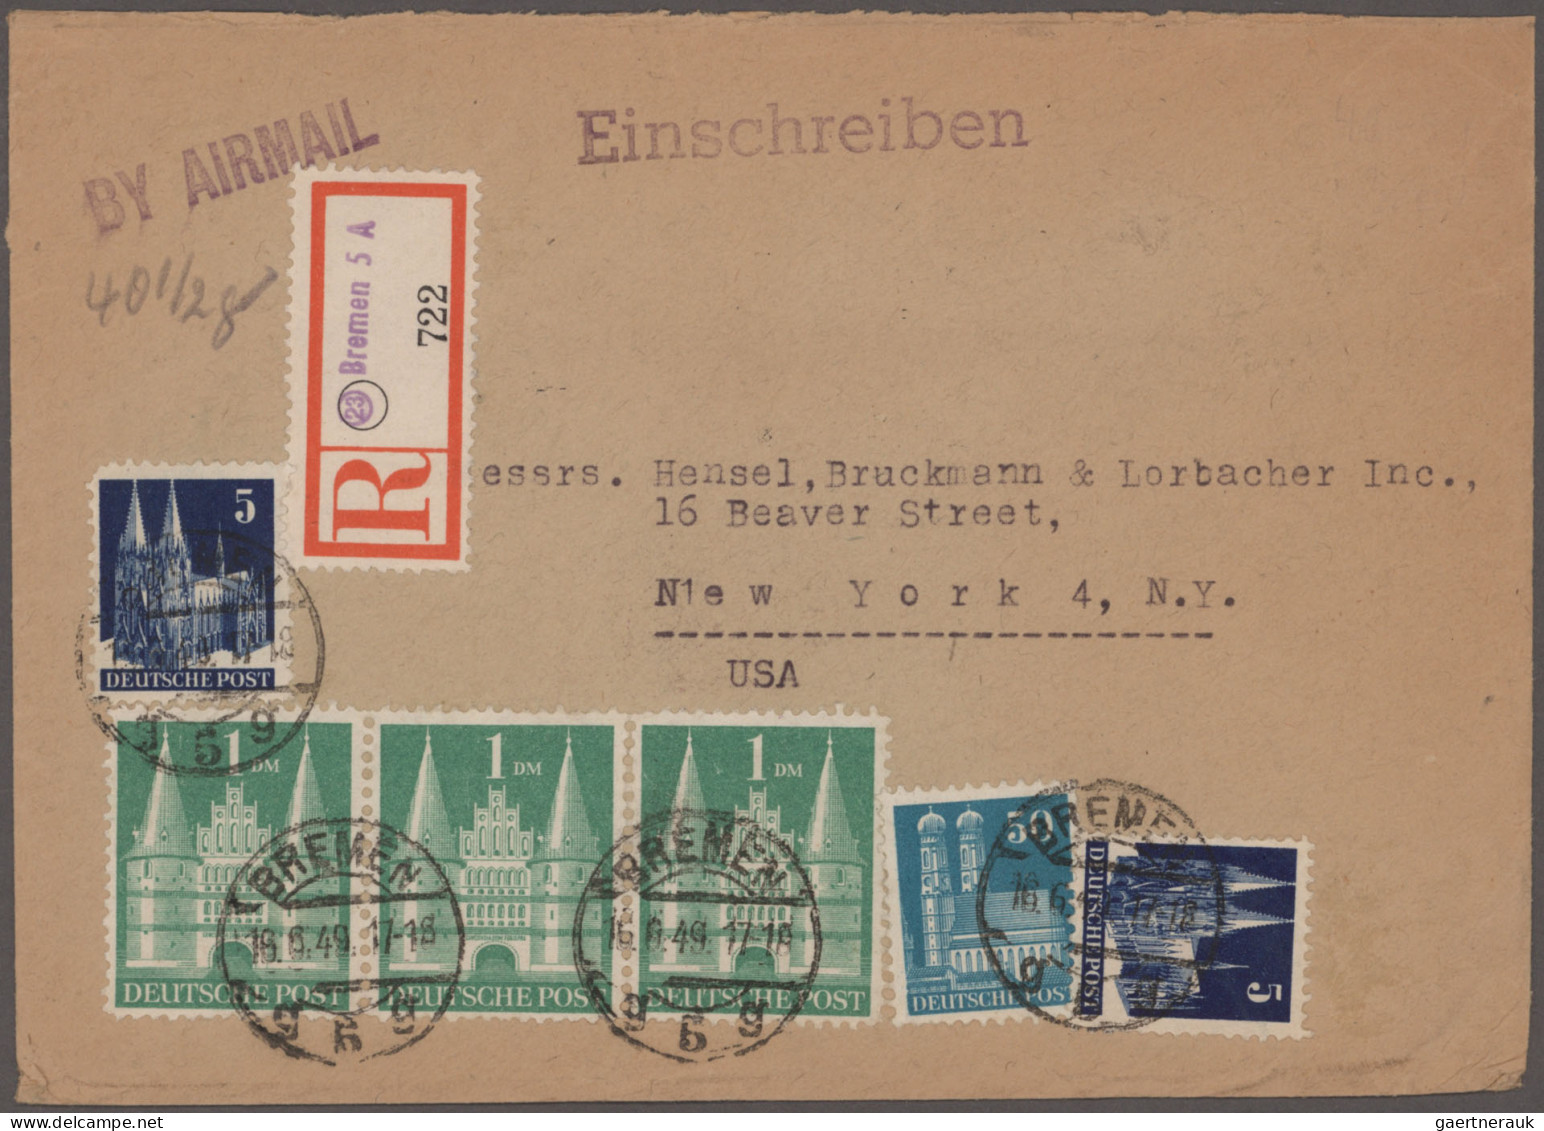 Bizone: 1948/1951, BAUTEN, vielseitige Sammlung von ca. 134 Briefen und Karten m